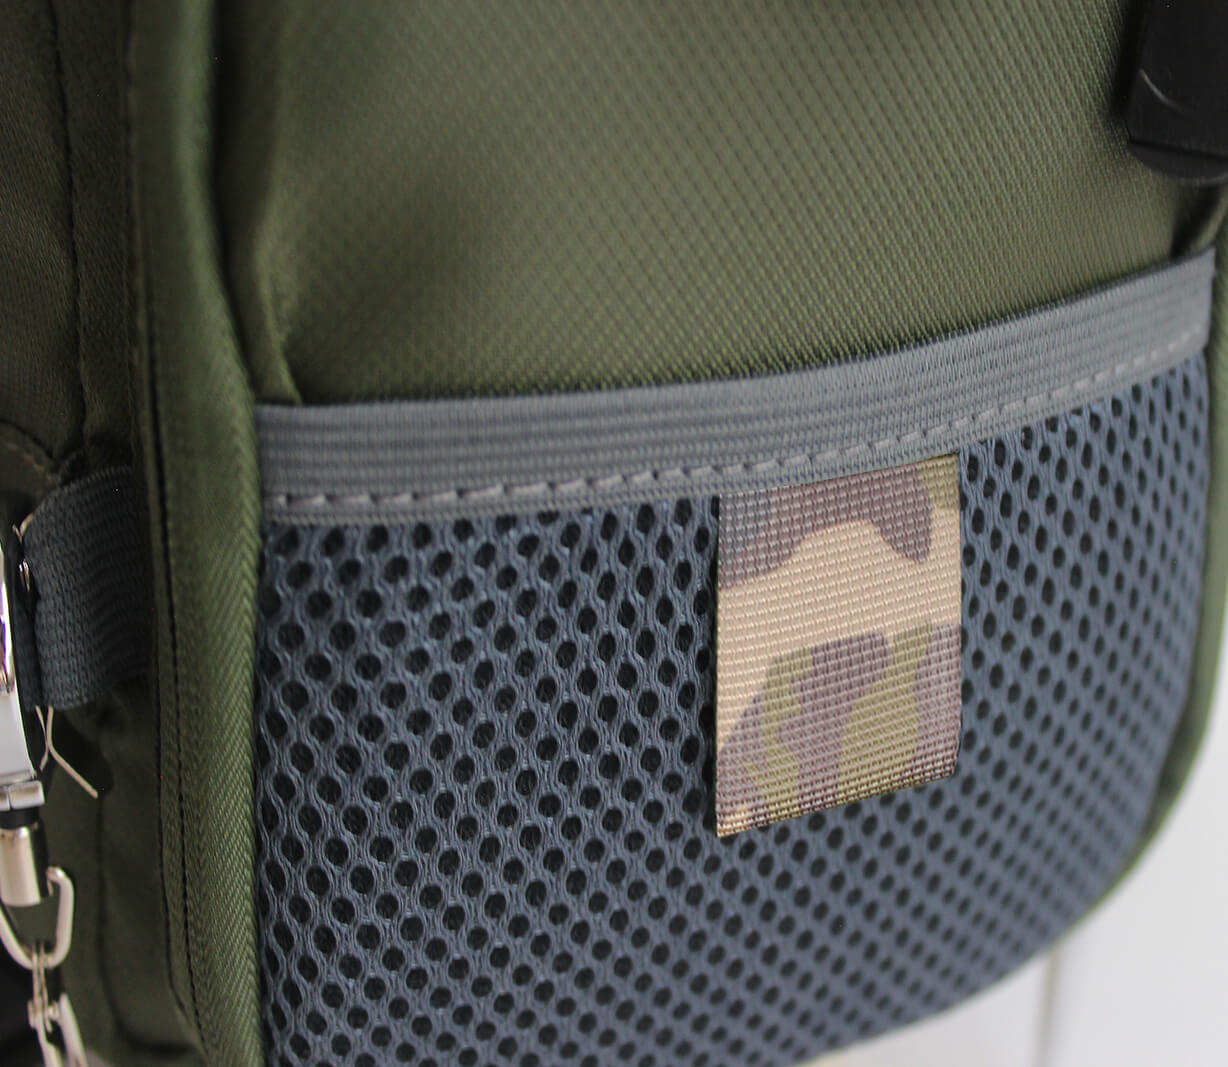 Kylebooker Kleine Brusttasche zum Fliegenfischen, leichte Hüfttasche SL01